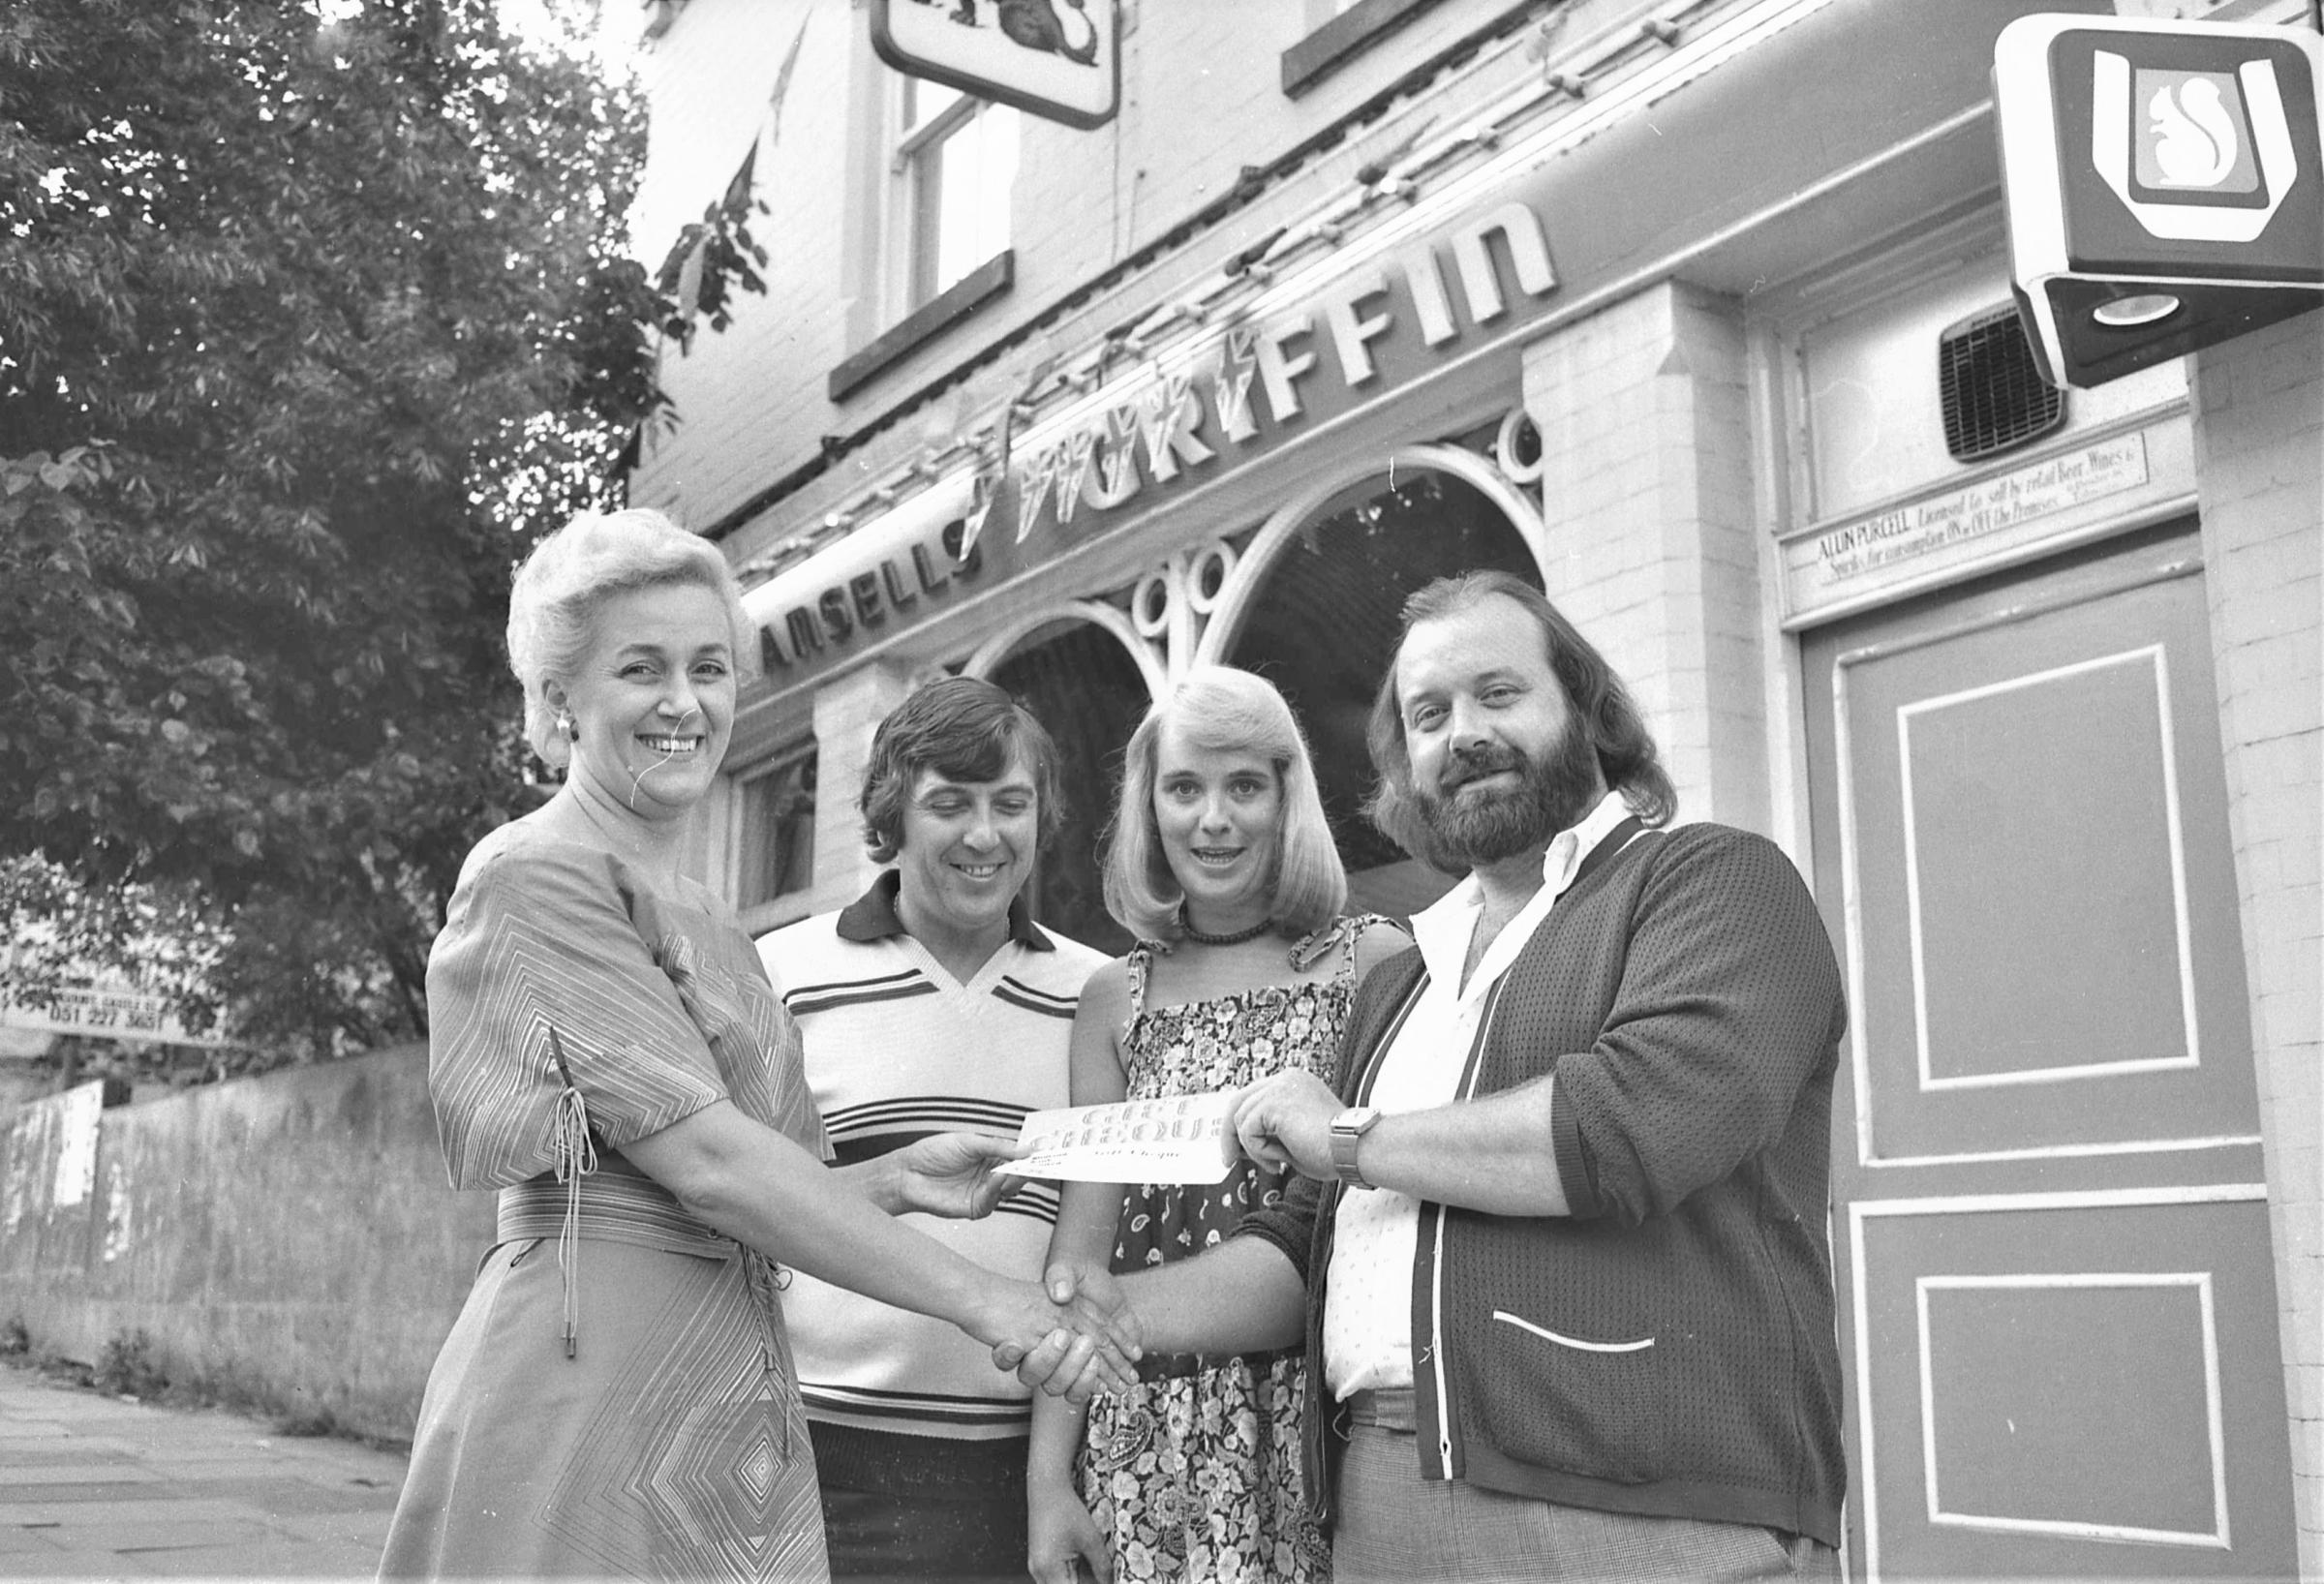 Presentation from the Griffin pub to Ysgol Delyn, July 1977.